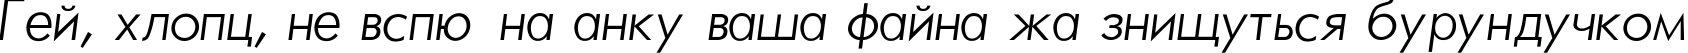 Пример написания шрифтом Futura_Light-Normal-Italic текста на украинском